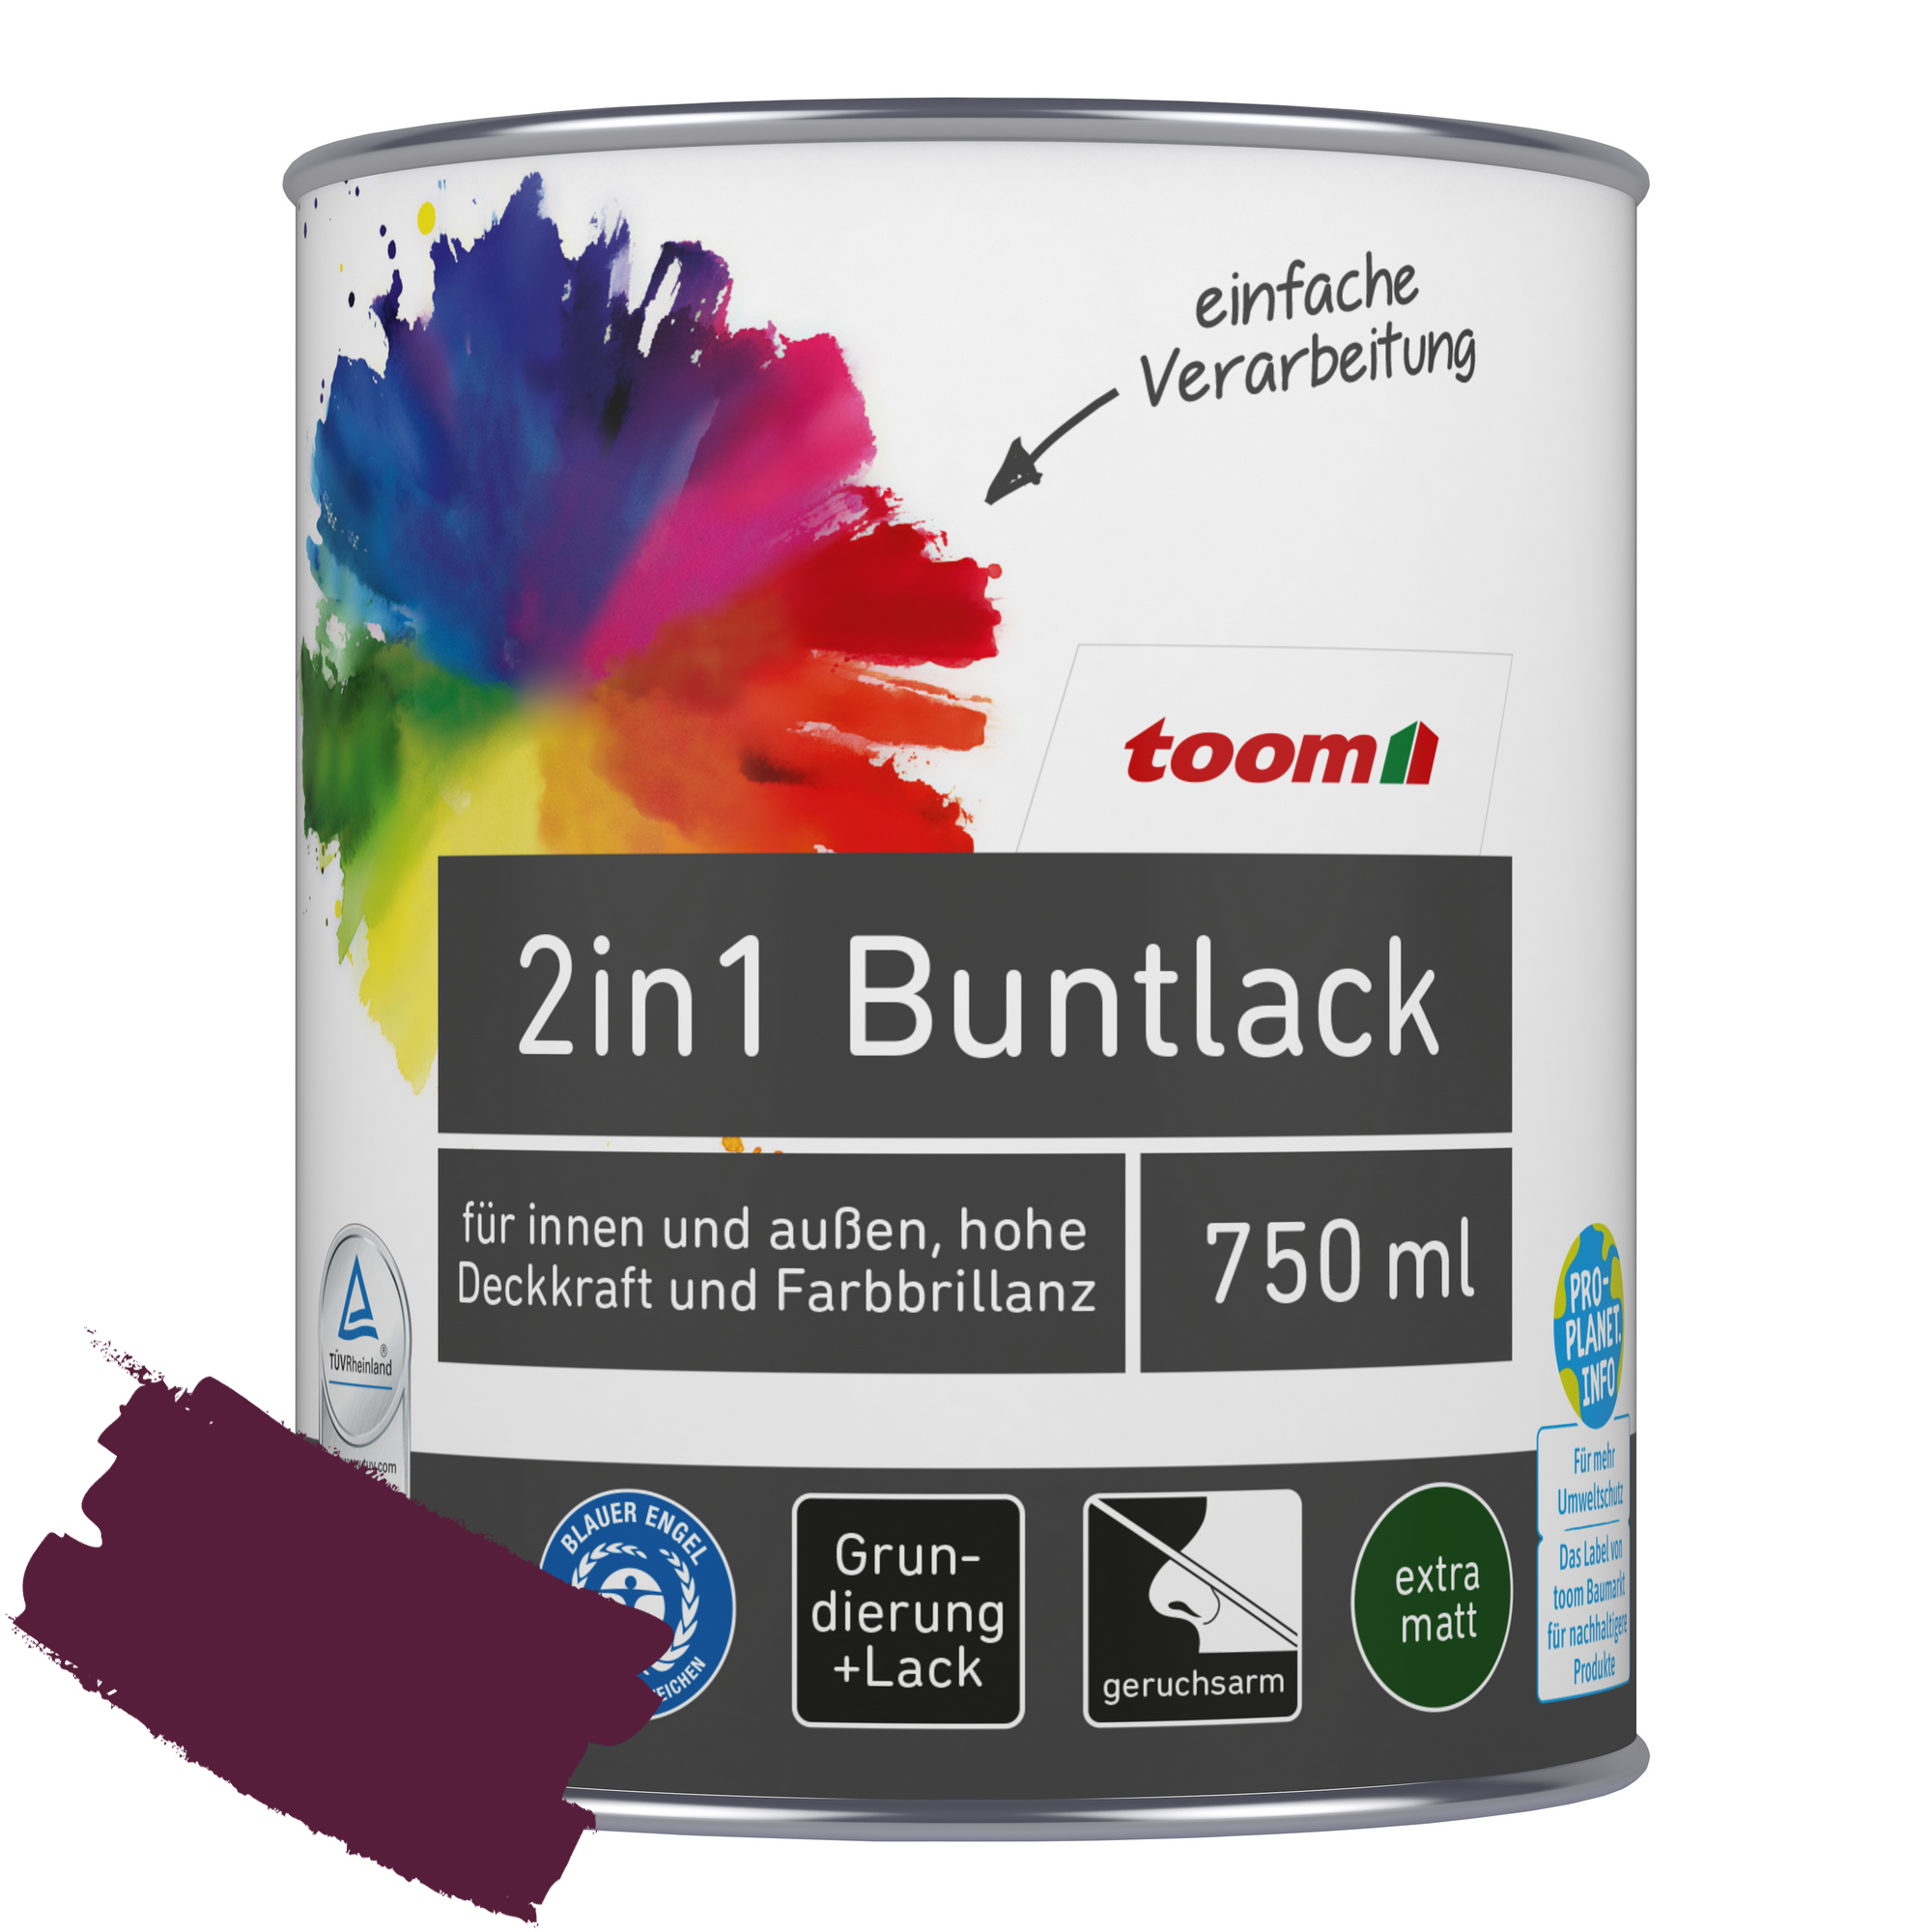 2in1 Buntlack merlotfarben matt 750 ml + product picture